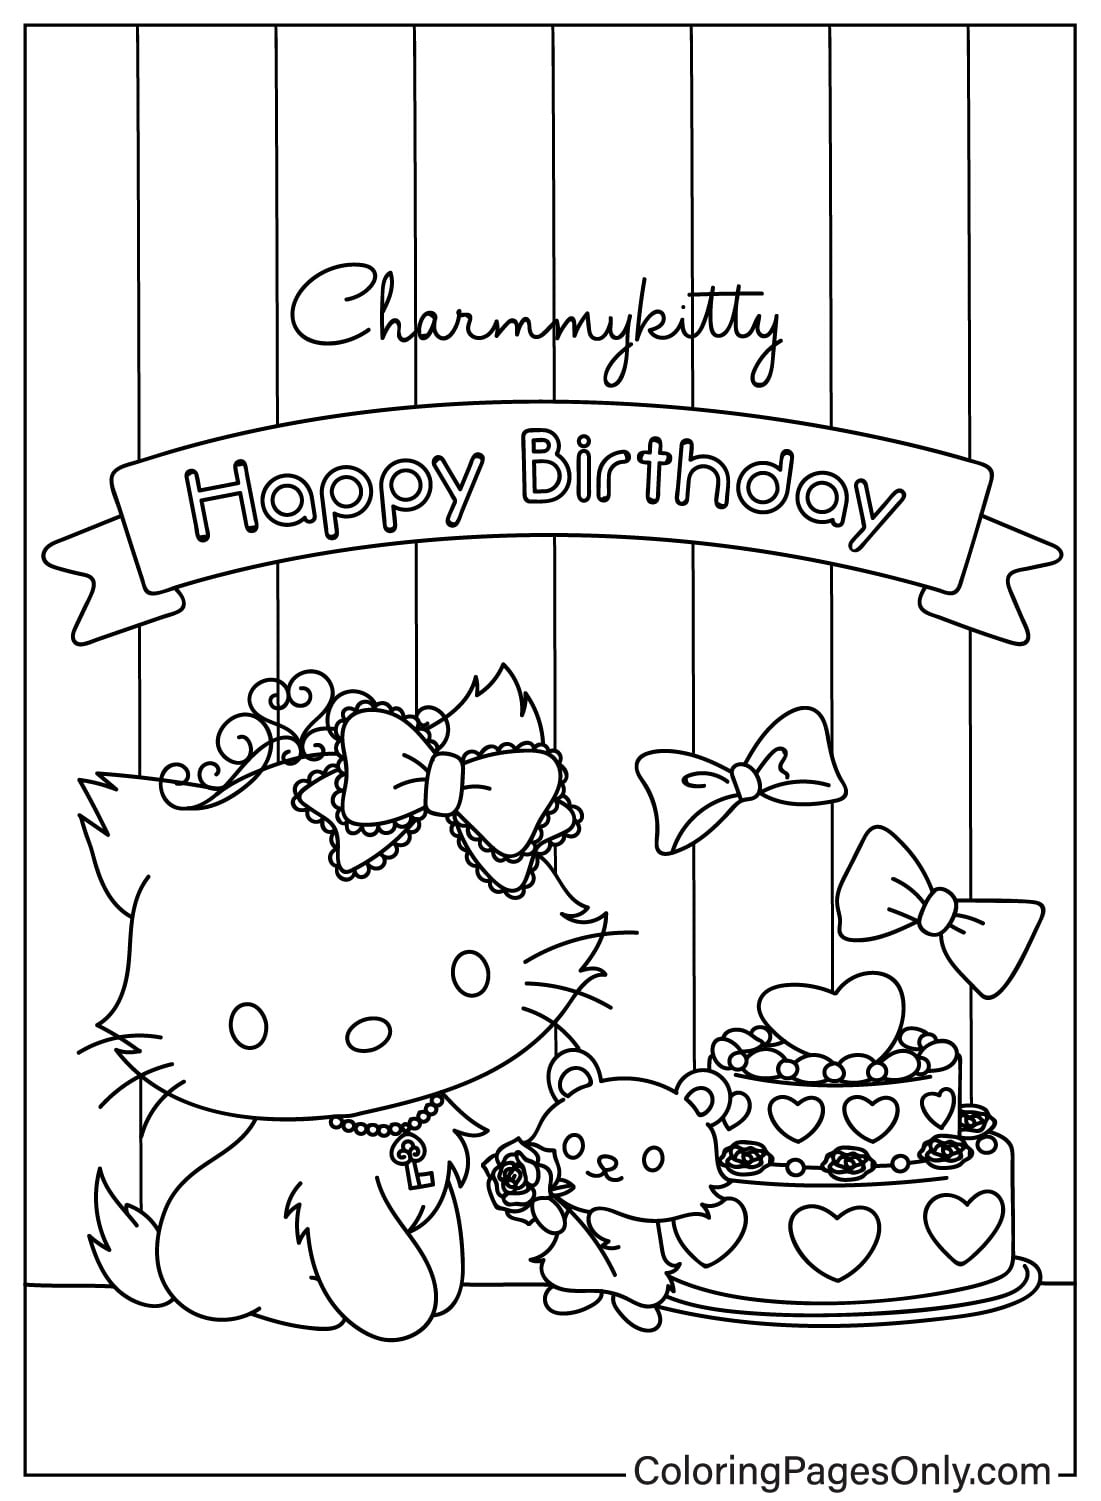 Alles Gute zum Geburtstag Charmmy Kitty Malvorlagen von Charmmy Kitty